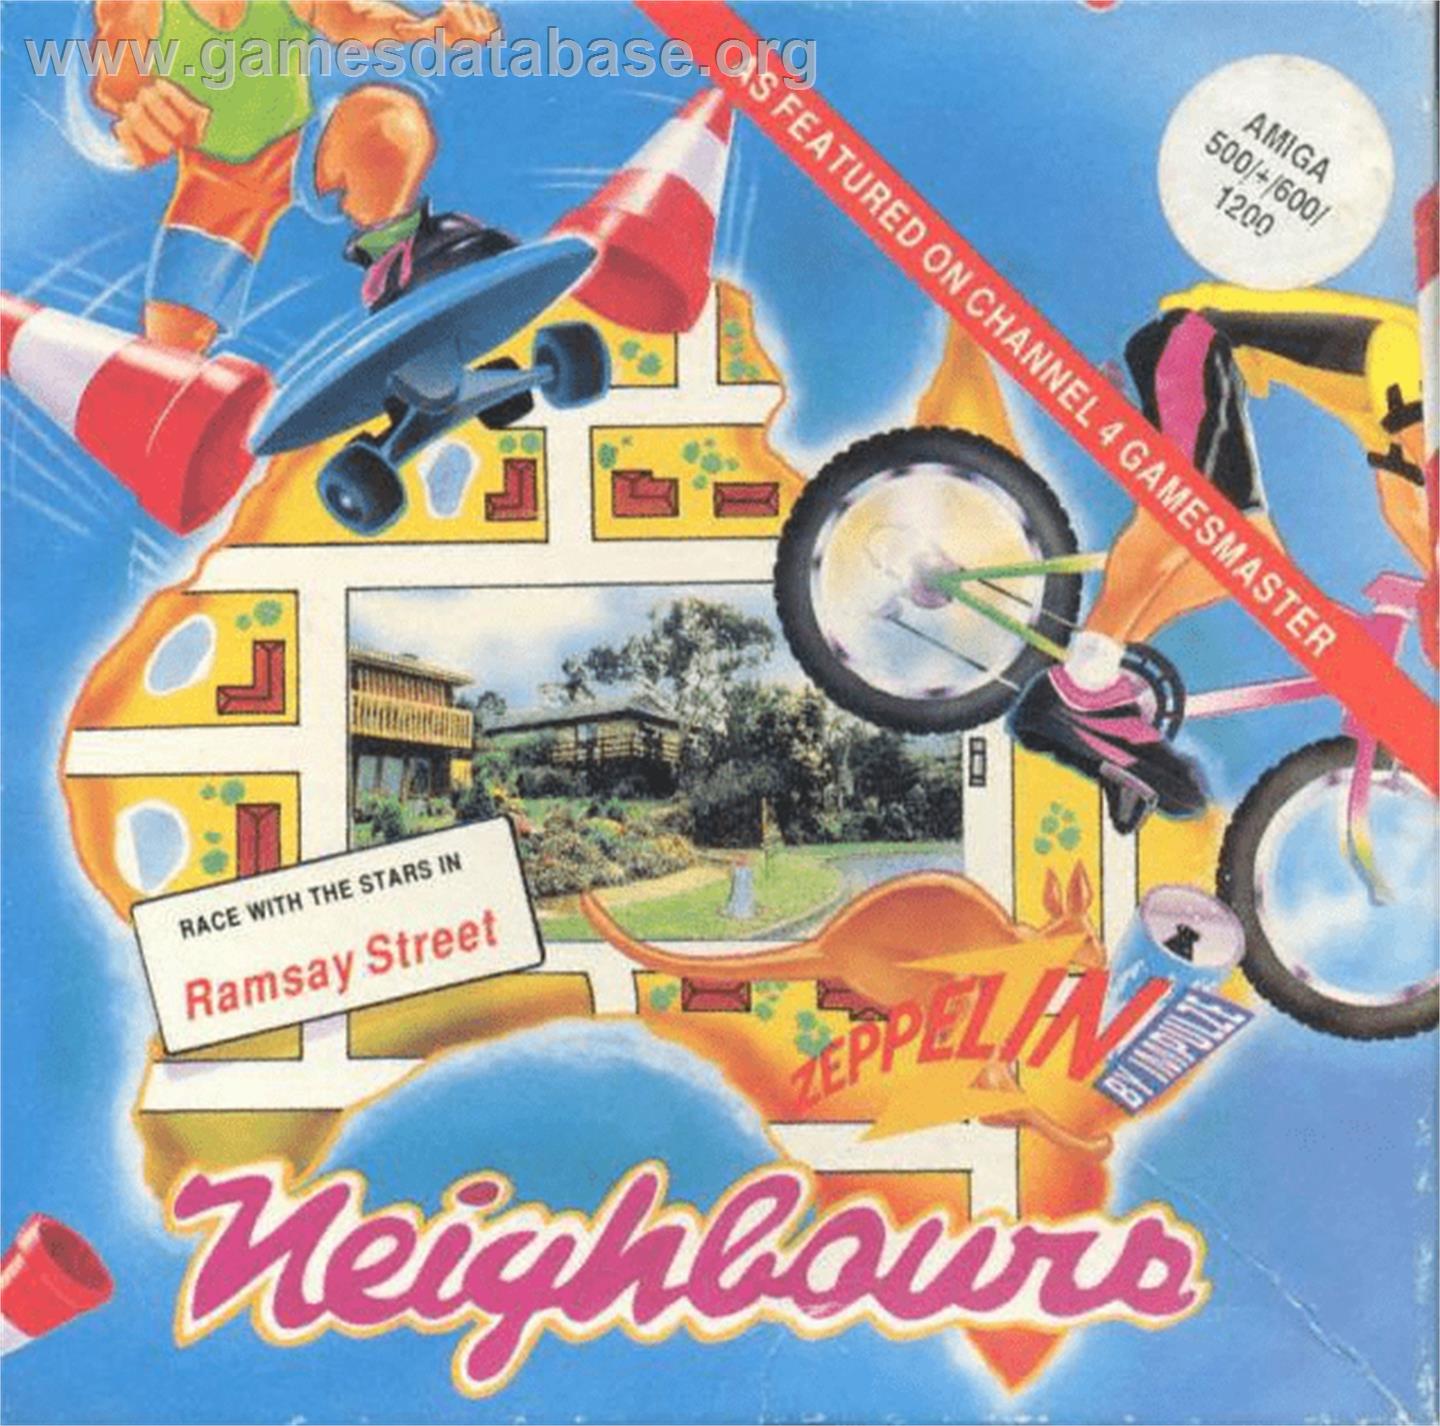 Neighbours - Commodore Amiga - Artwork - Box